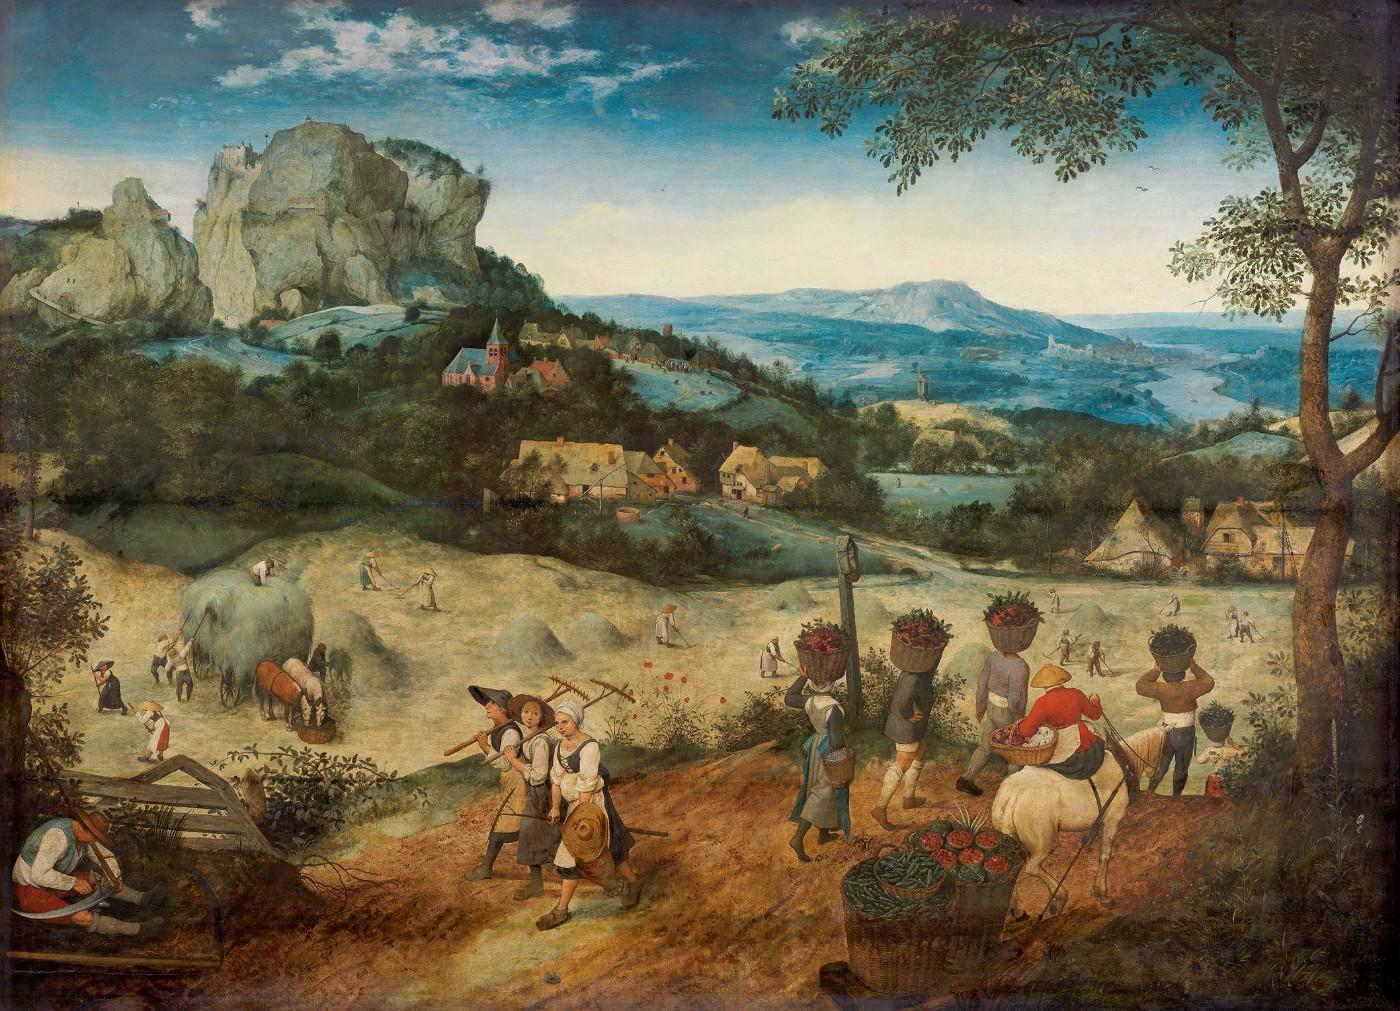 Pieter Bruegel the Elder, The Haymaking, 1565